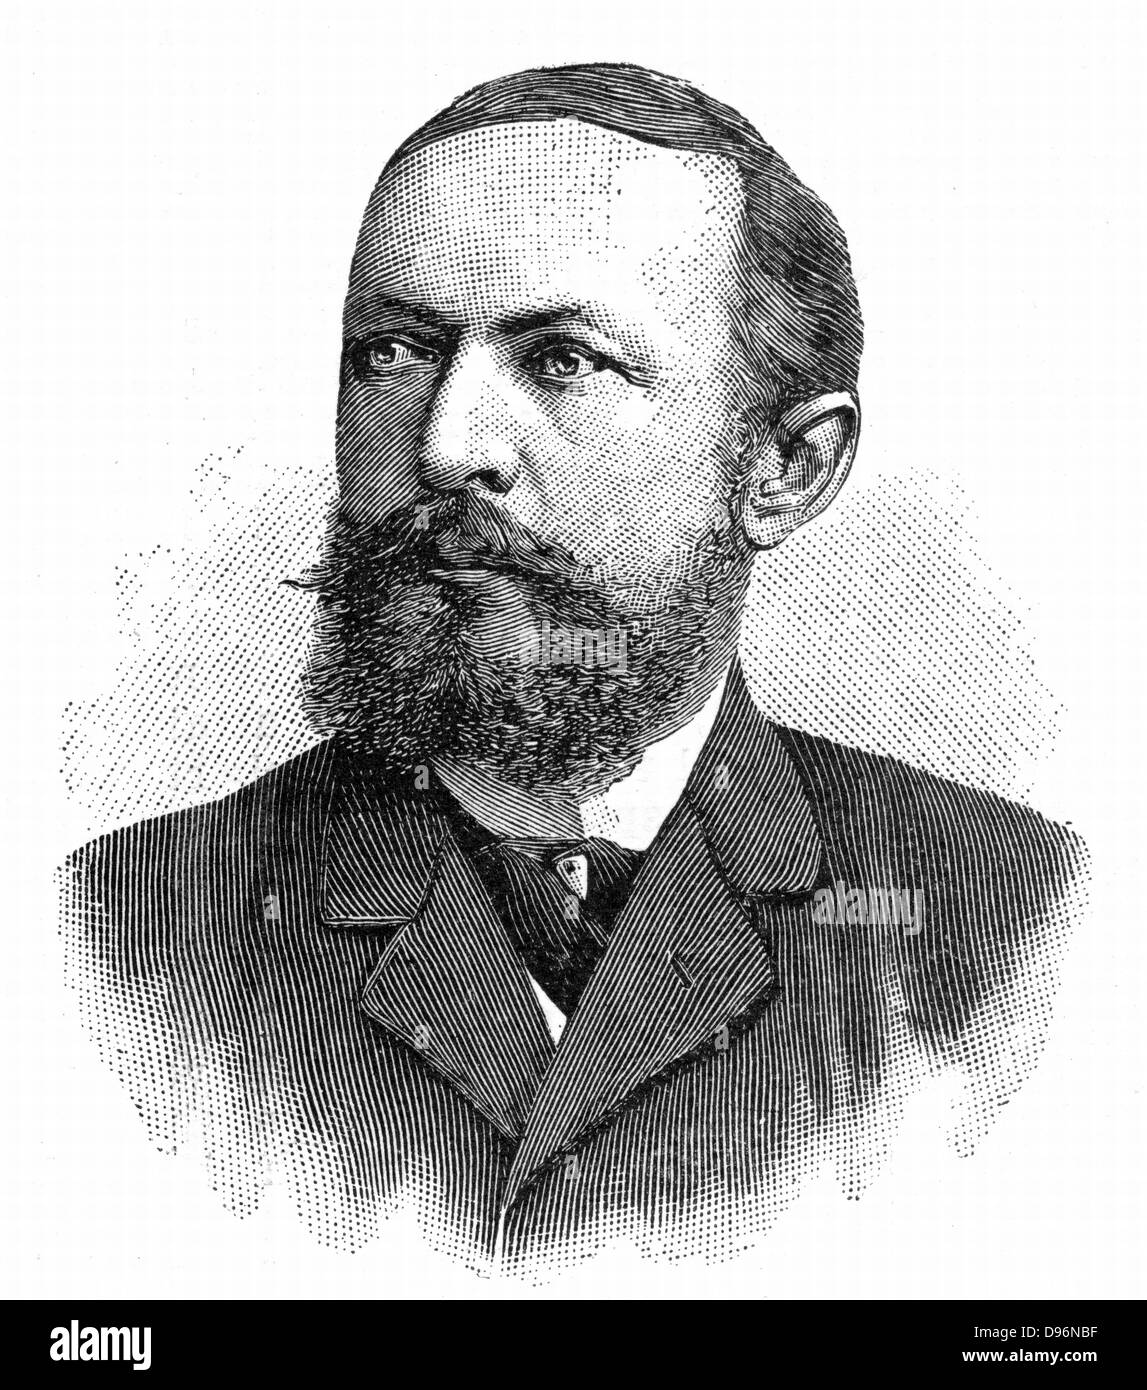 Emil von Behring (1854-1917) bactériologiste et immunologiste allemand. Reçu le premier prix Nobel de physiologie ou médecine, 1901. Gravure, 1902 Banque D'Images